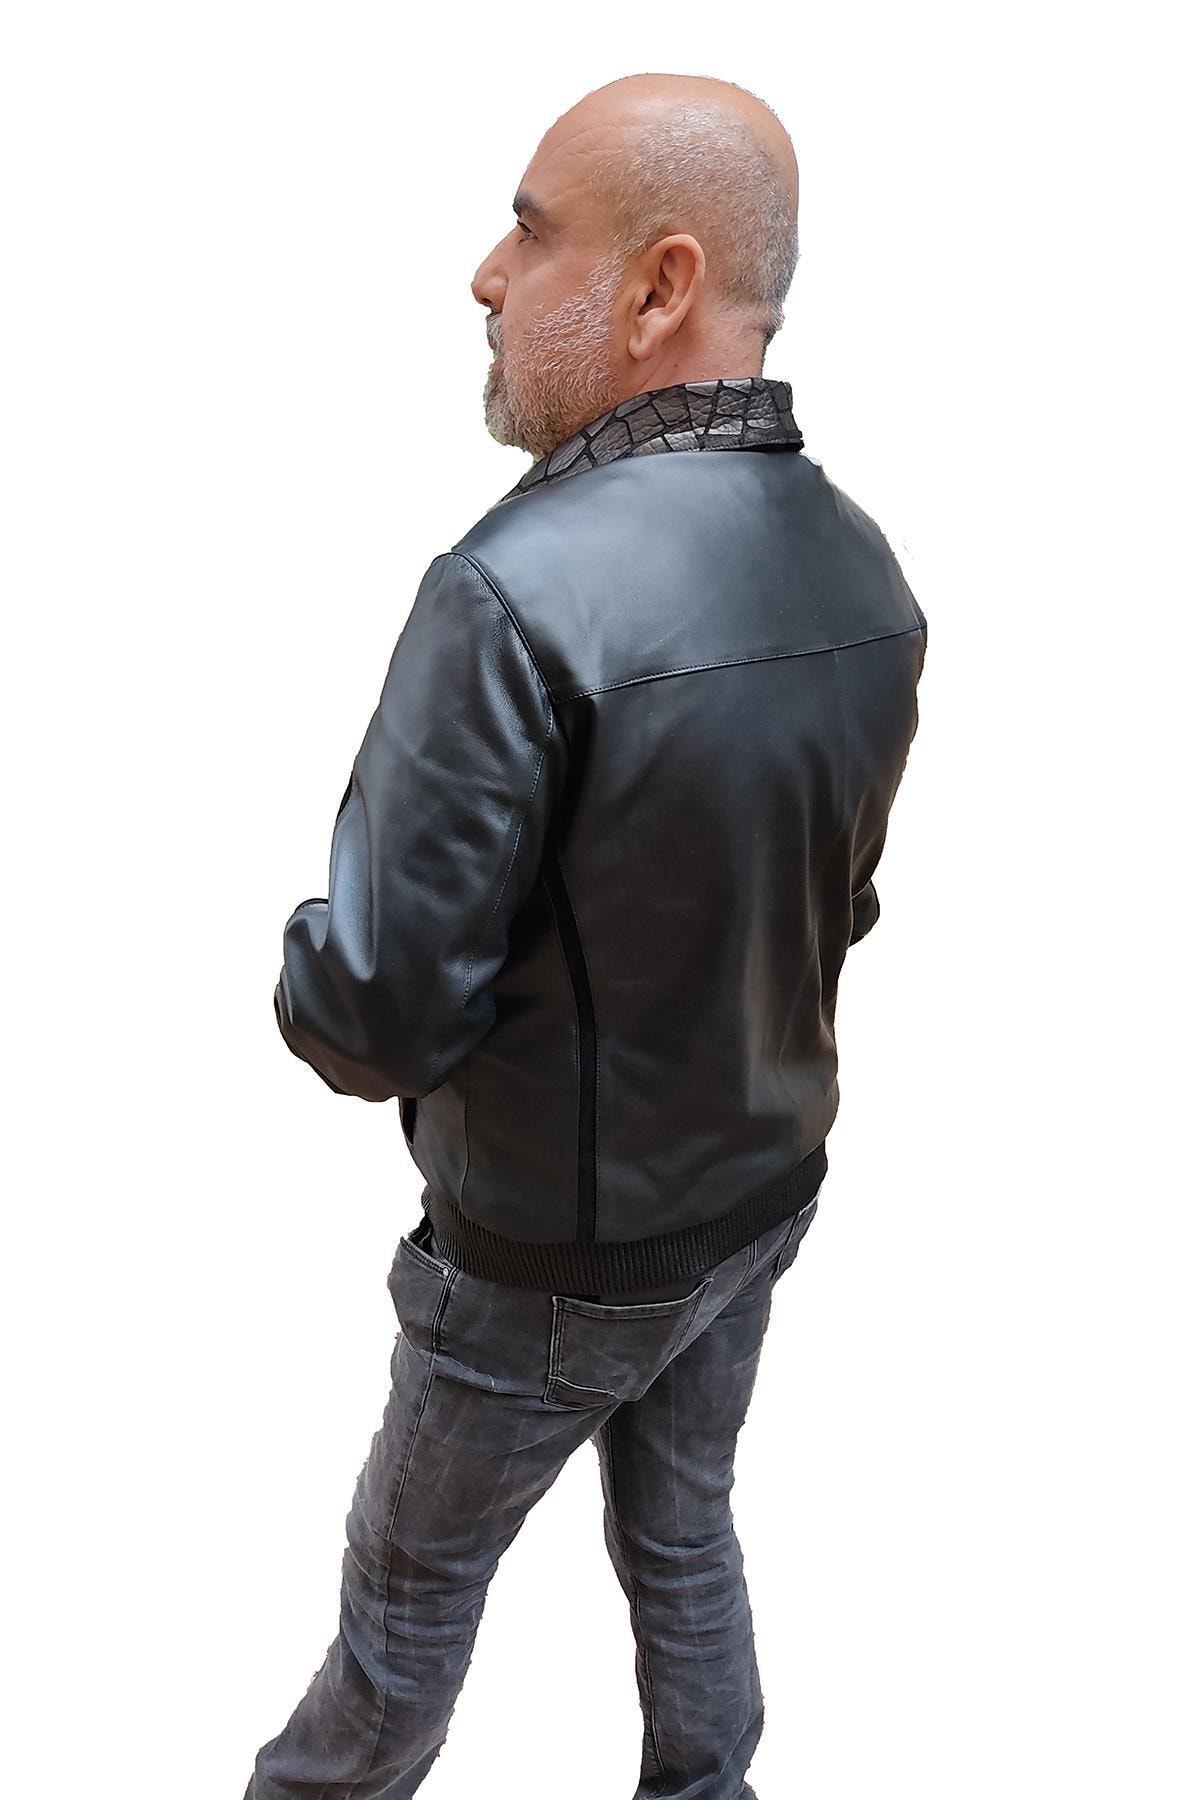 Önek Deneme Kardeşler  Tannery Leather Erkek Kahverengi Timsah Yaka Baskı Deri Ceket M-1010  Fiyatı, Yorumları - TRENDYOL